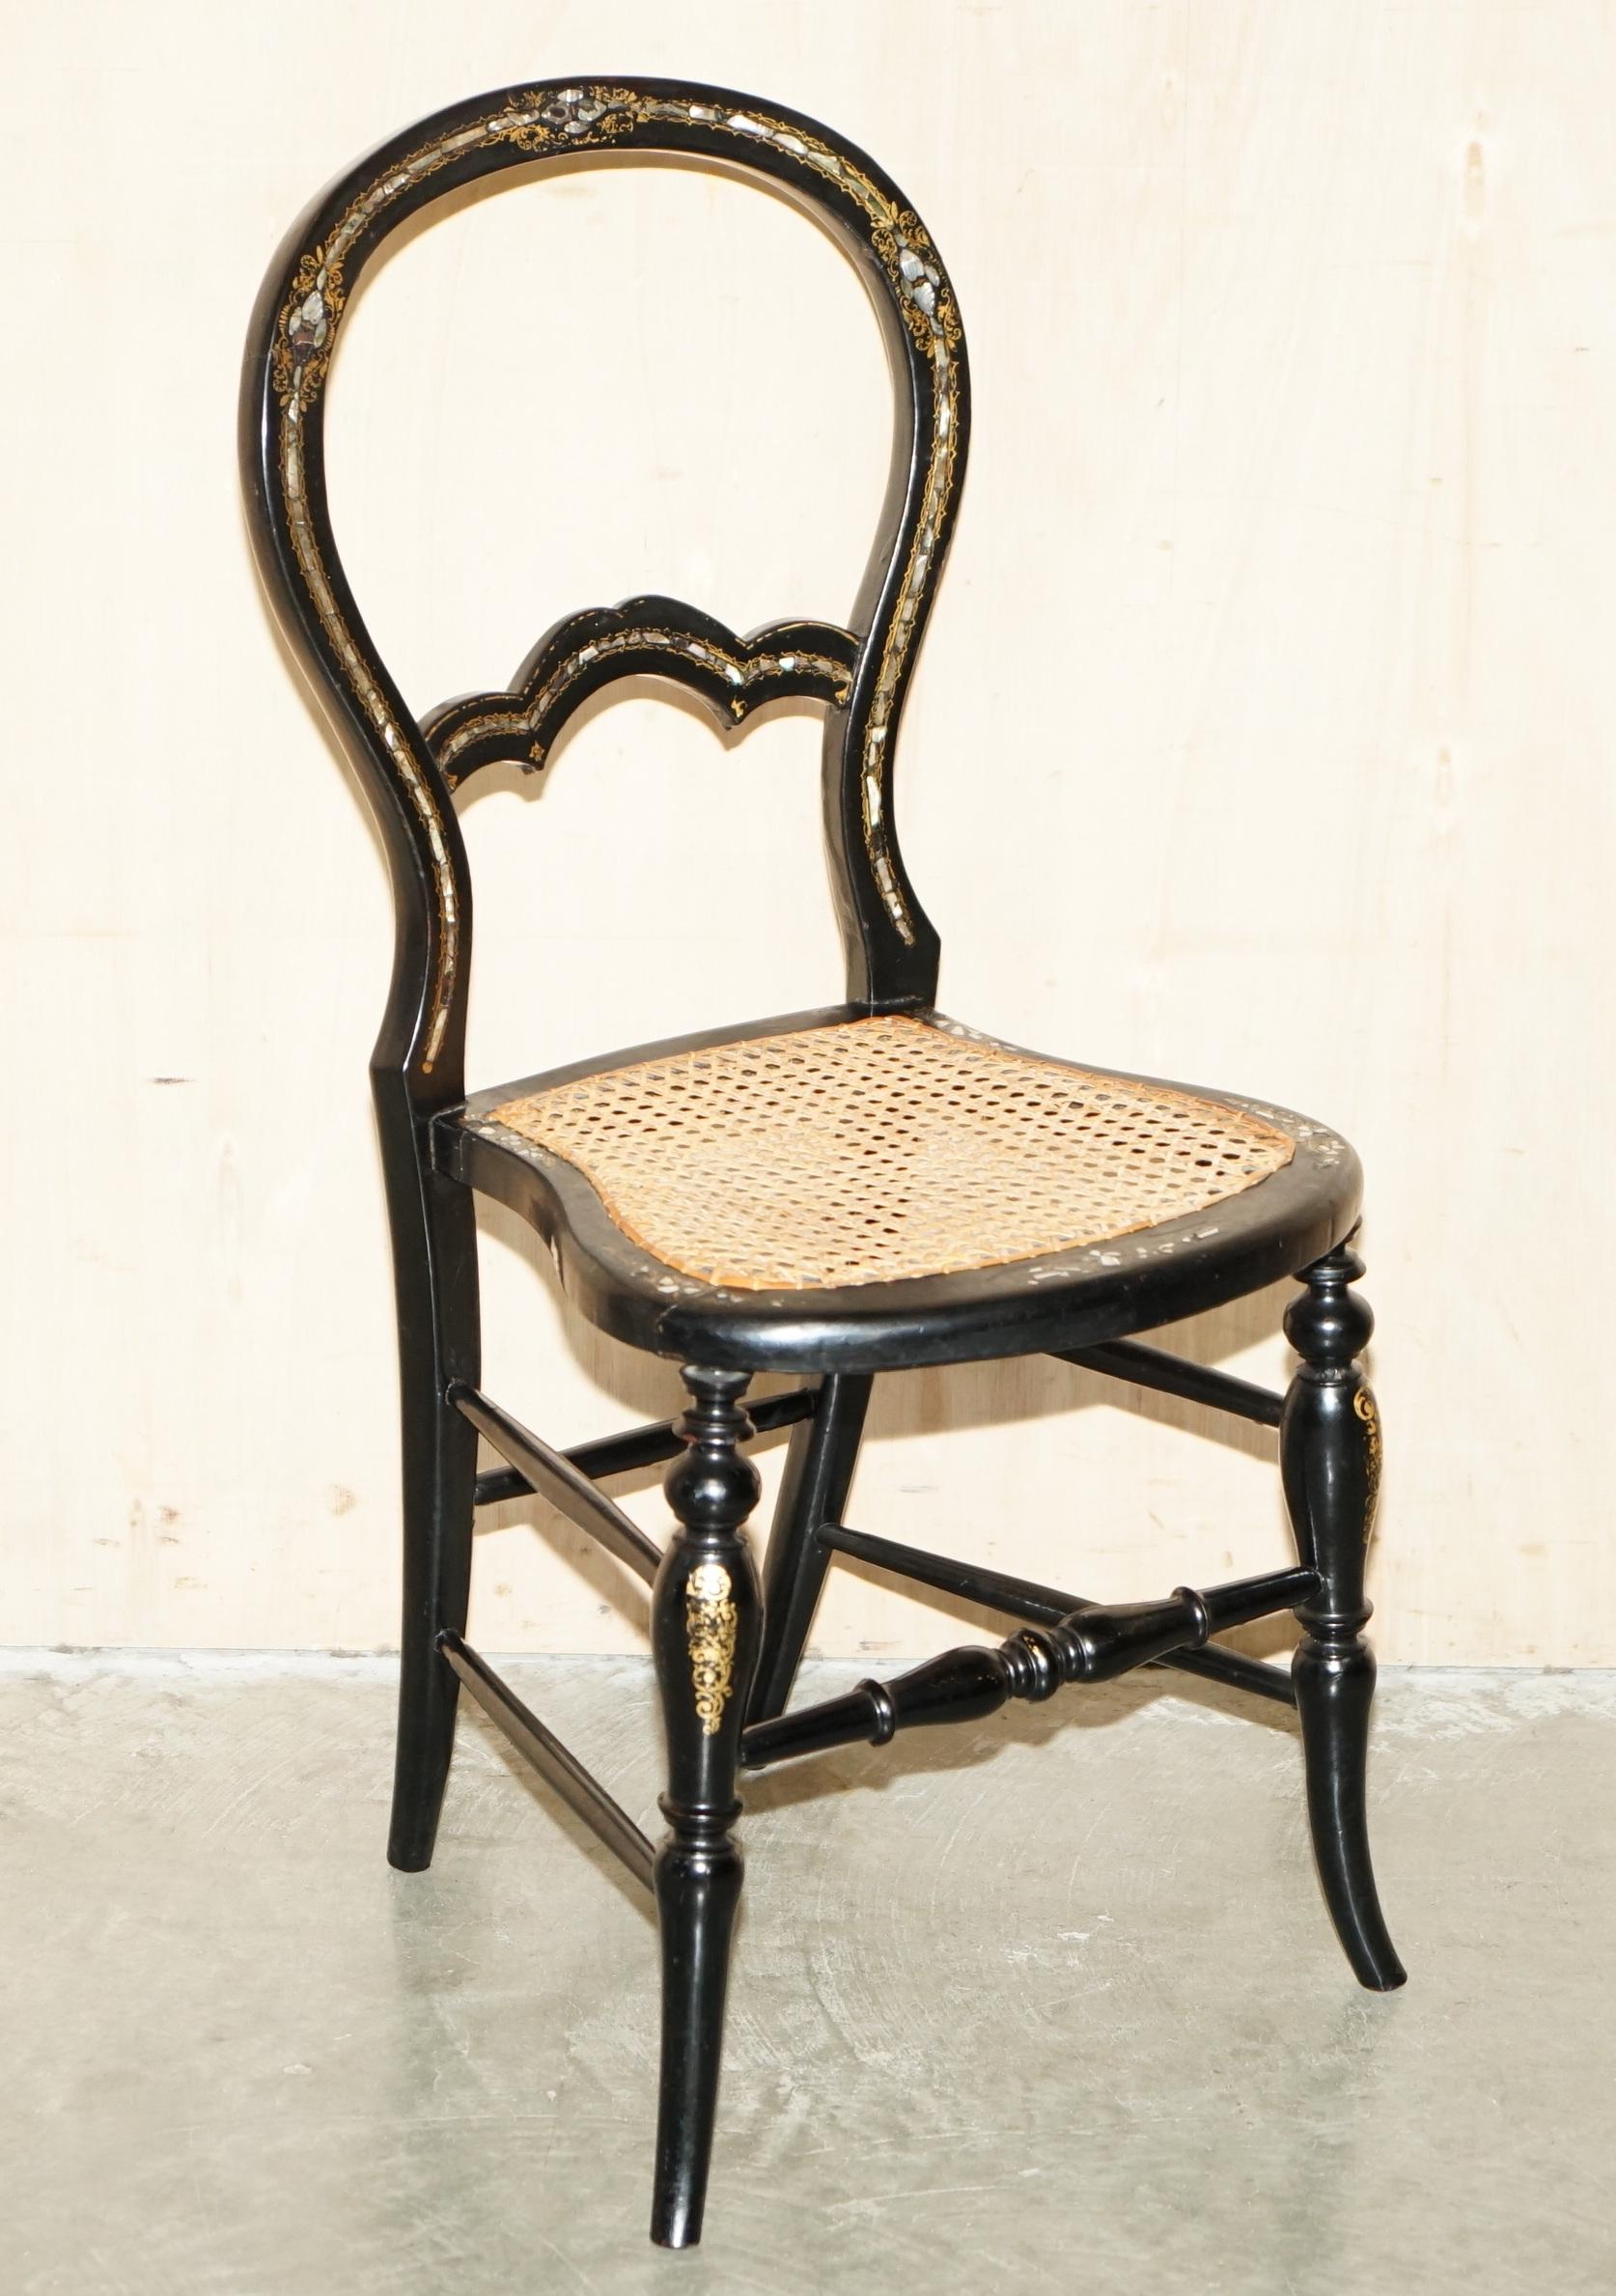 Royal House Antiques

Royal House Antiques freut sich, diese hübsche Suite von vier originalen Regency-Stühlen (ca. 1810-1820) aus Ebenholz mit Perlmutt-Intarsien zum Verkauf anbieten zu können.

Bitte beachten Sie die Liefergebühr aufgeführt ist